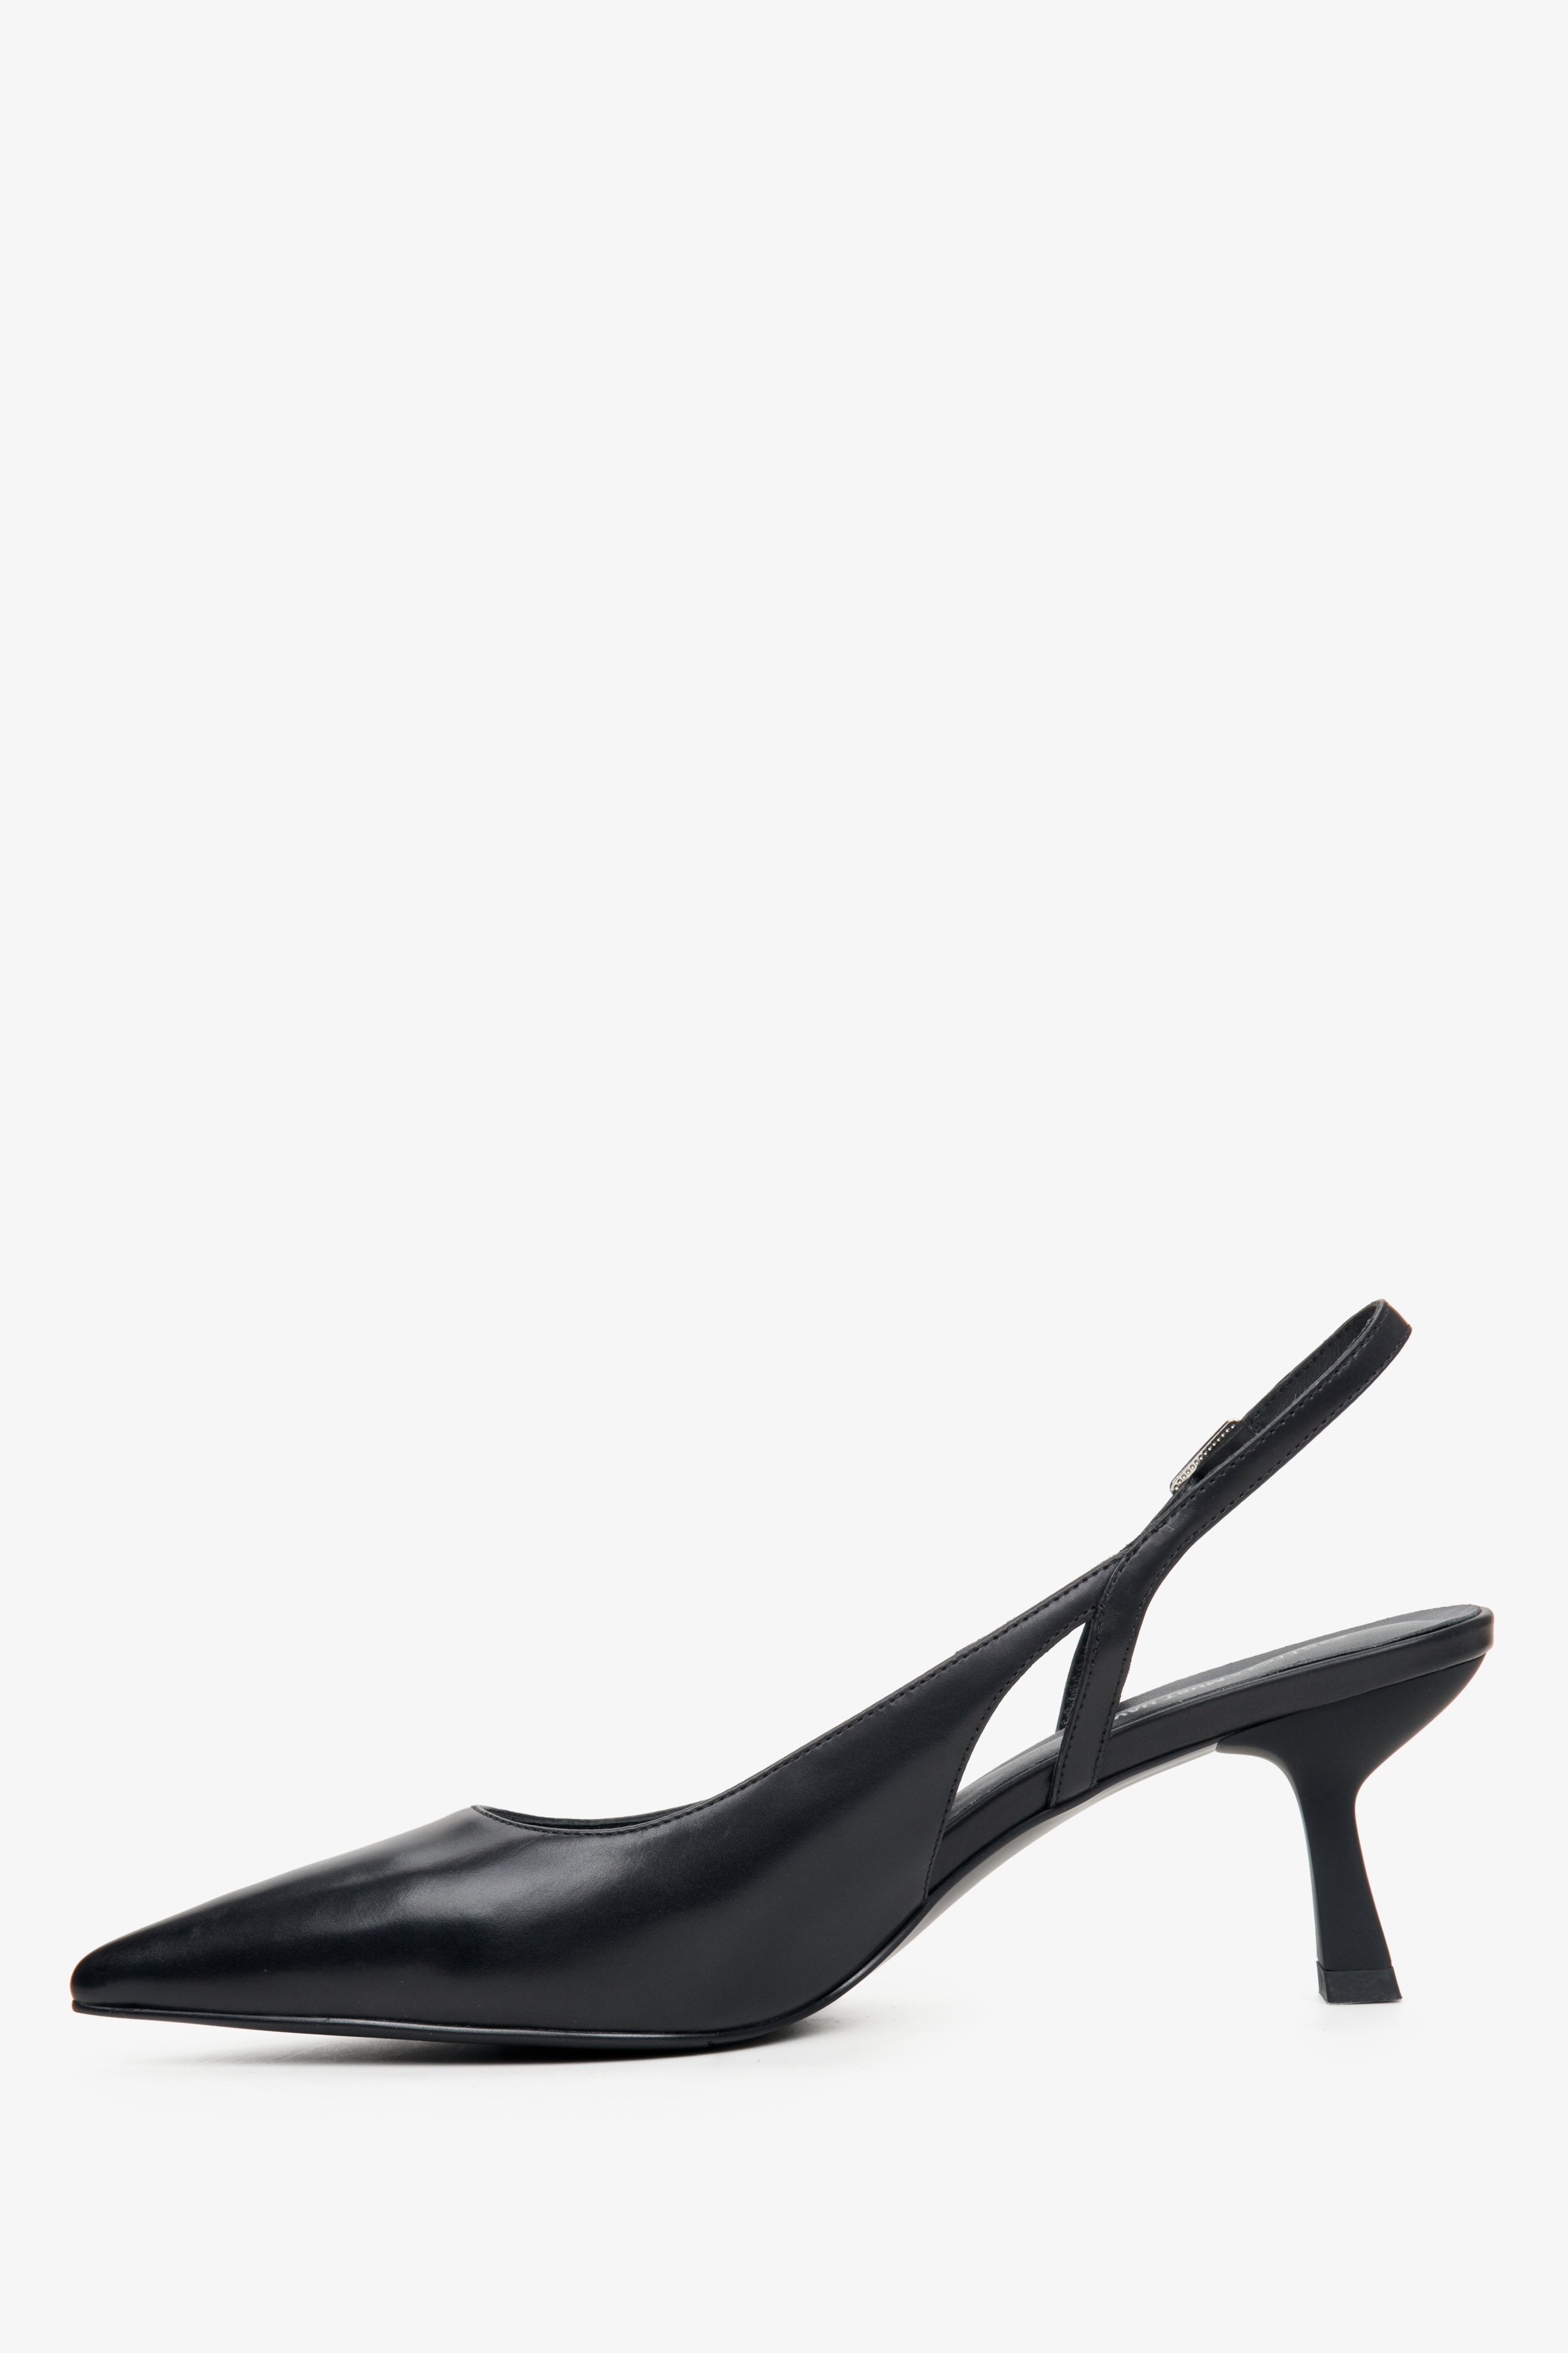 Skórzane czarne slingbacki Estro X MustHave - profil buta.